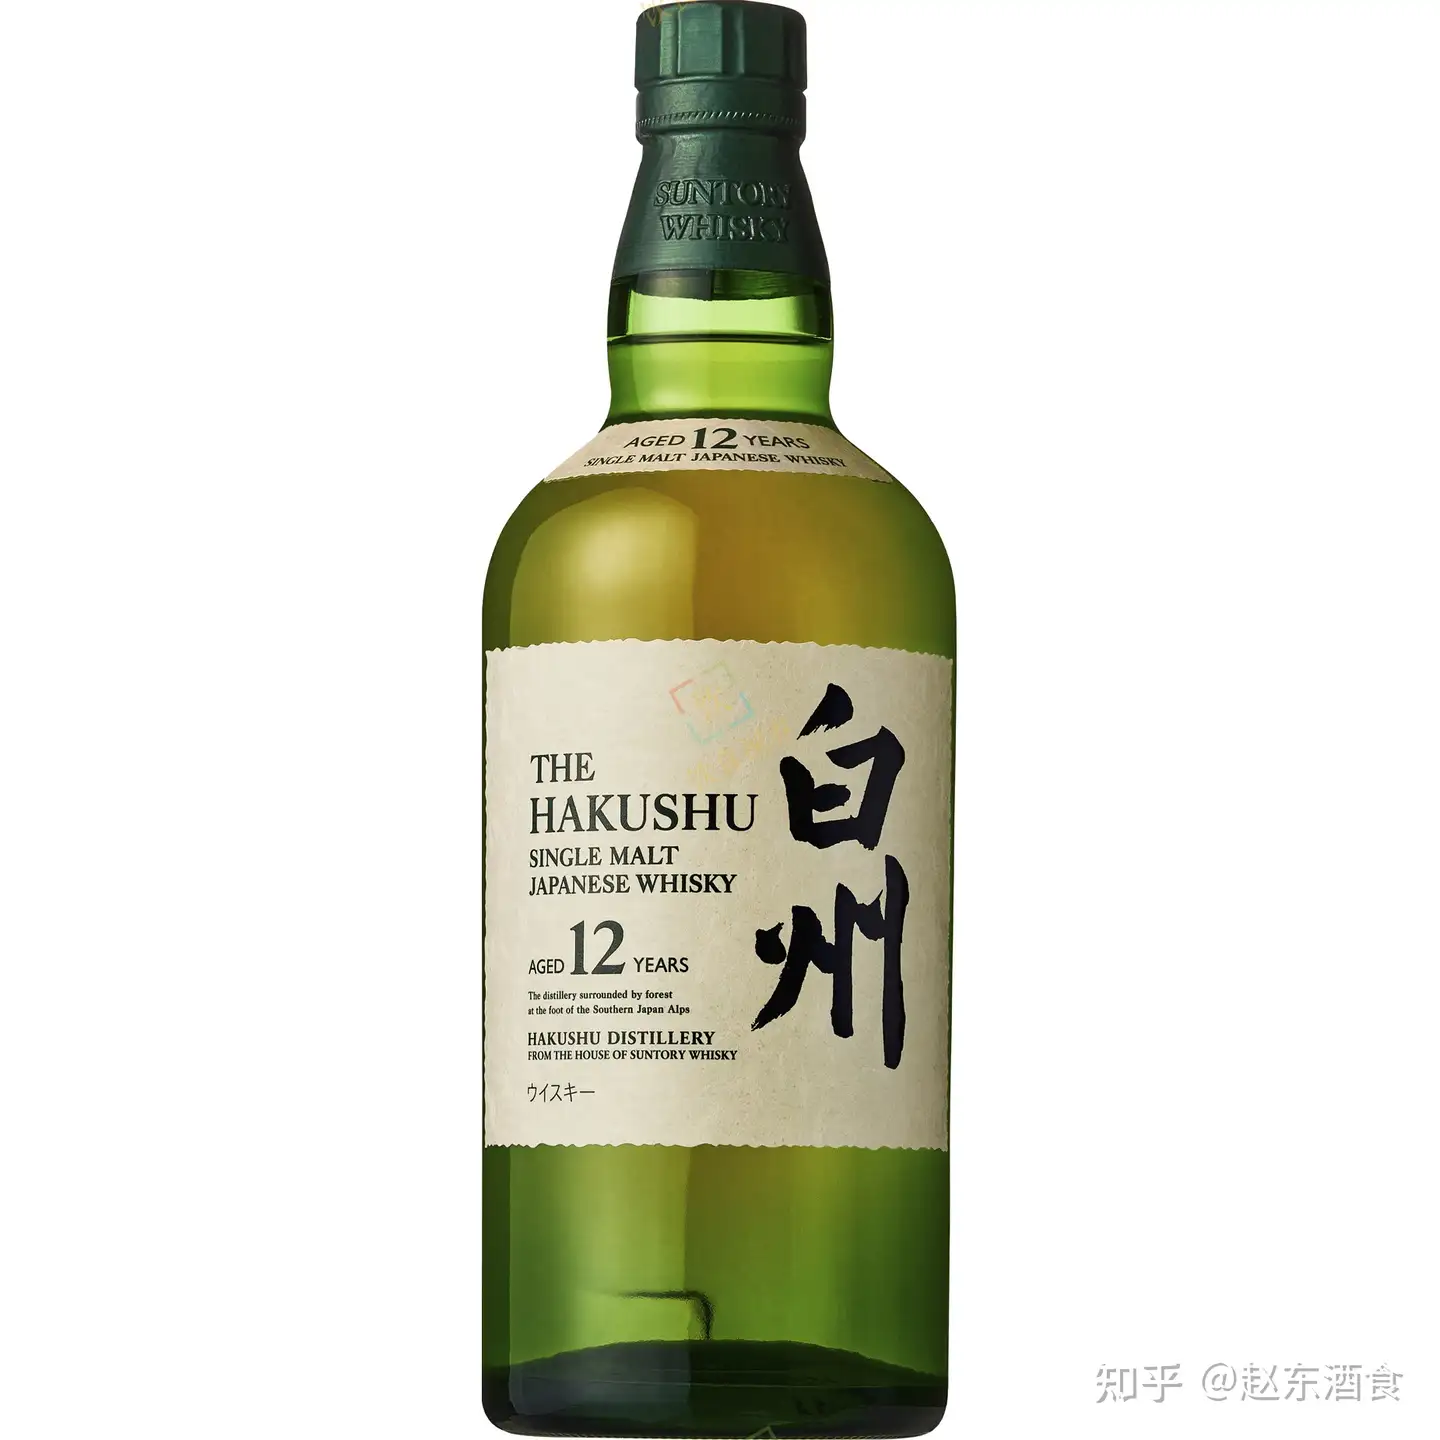 快讯!三得利旗下这家日本威士忌酒厂100周年特别版现身! - 知乎